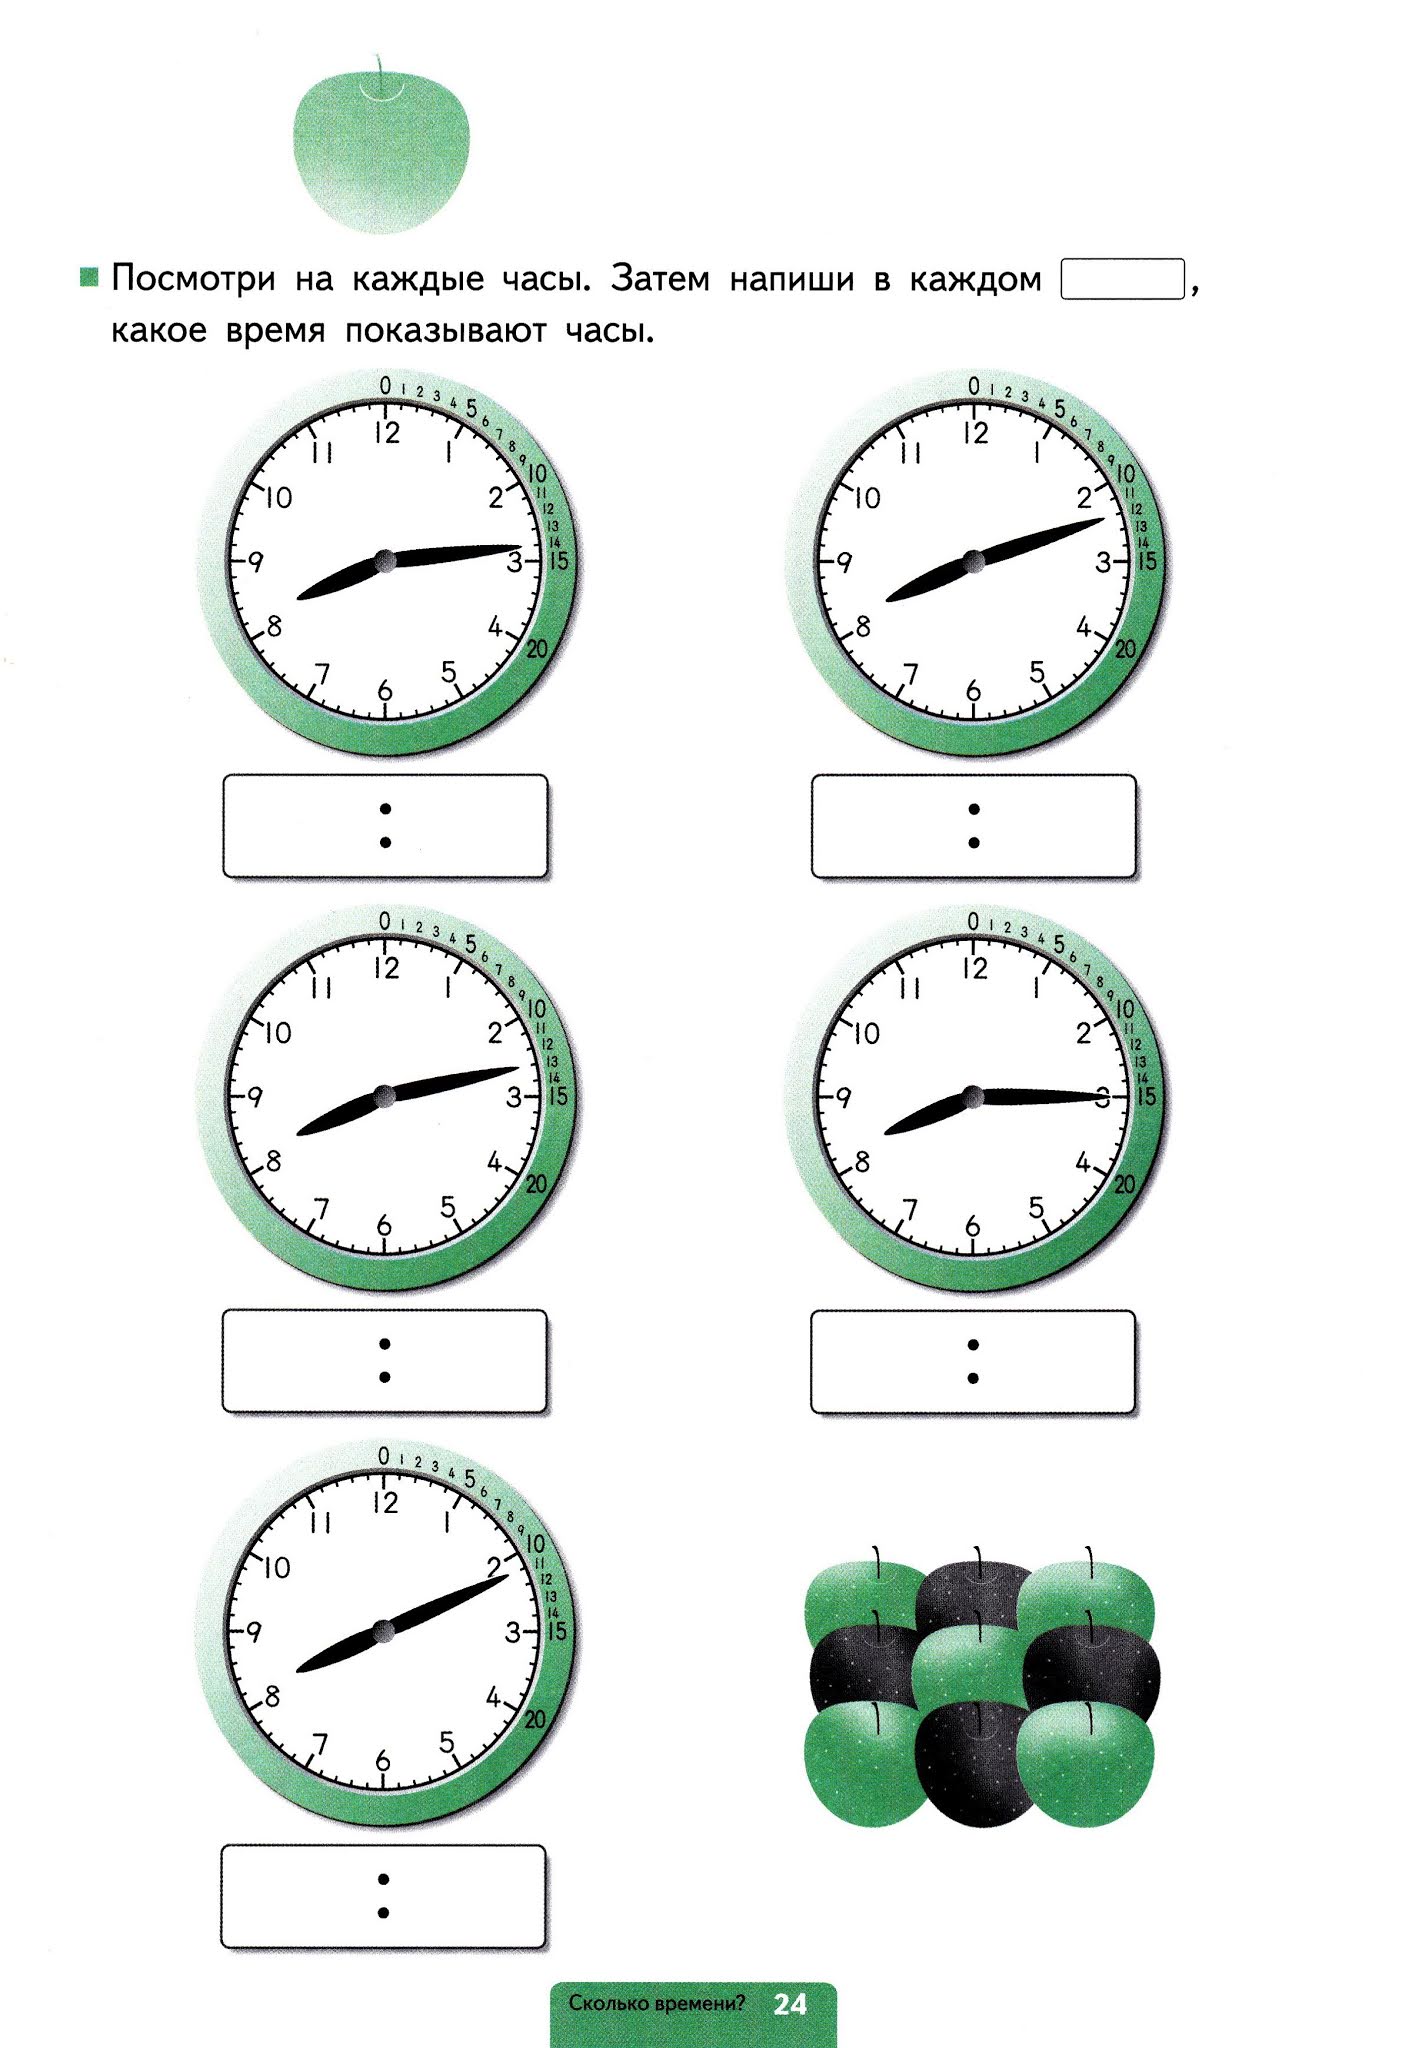 Временем отдыха называется время. Буклет Учимся определять время. Как научиться измерять транспортиром время на часах. 9:20 Как определить время.